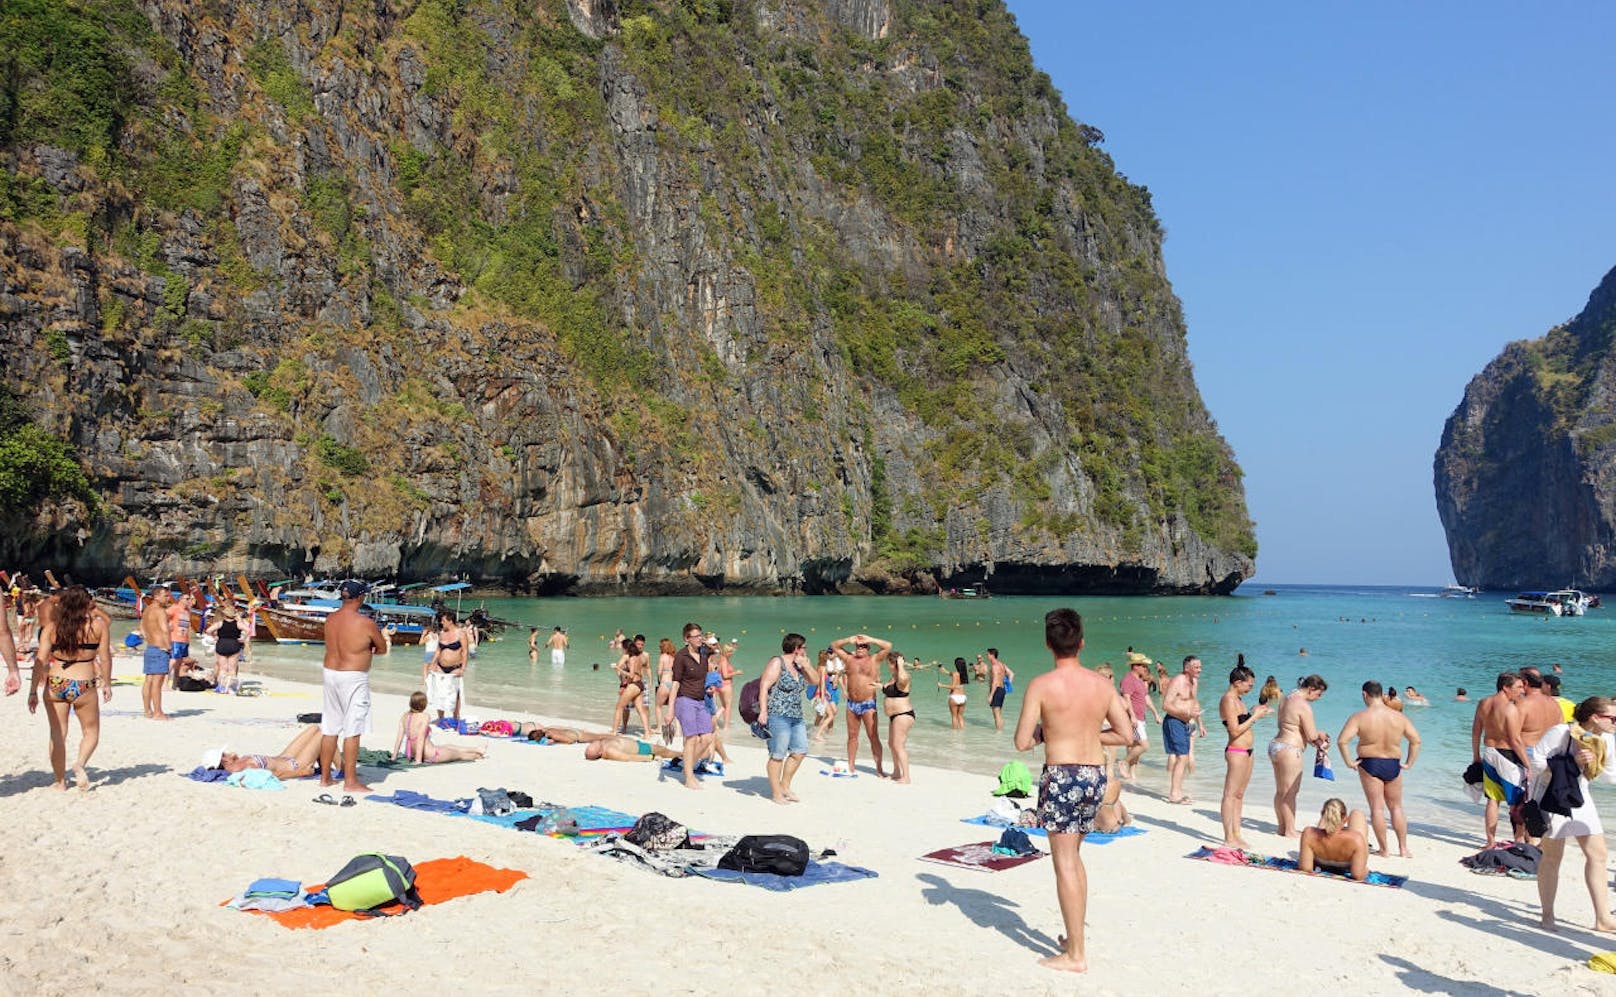 Maya Bay auf der thailändischen Insel Phi Phi wurde als Drehort für den Film "The Beach" mit Leonardo di Caprio weltberühmt. Weil der Strand seitdem von Urlaubern überlaufen ist, zog die thailändische Regierung die Notbremse und sperrt den Strand für vier Monate im Jahr, um weitere Umweltschäden zu verhindern.